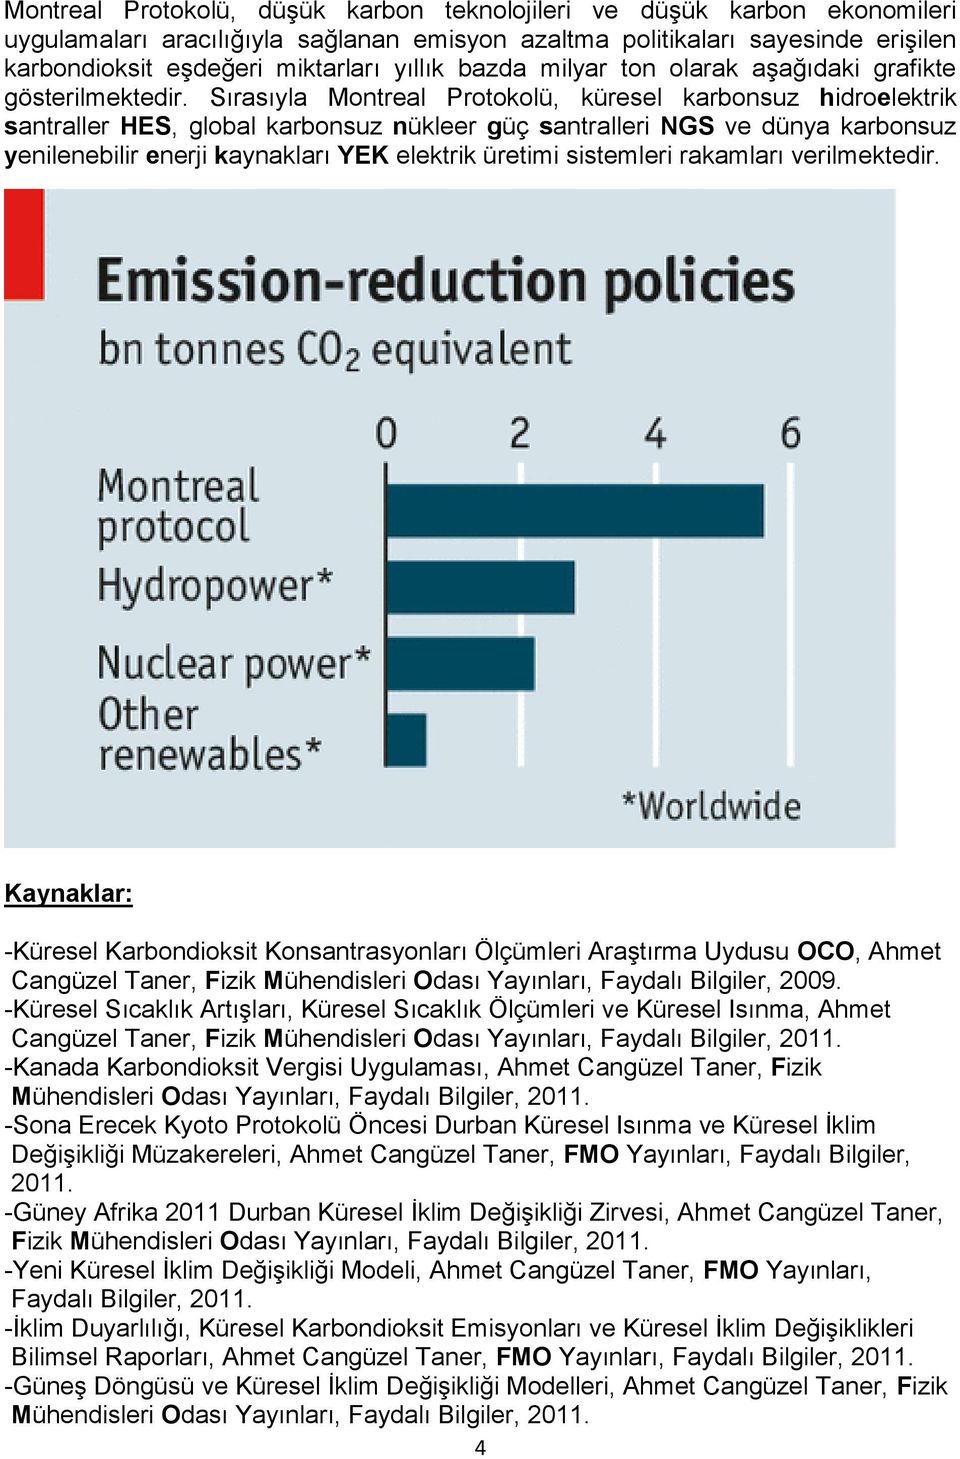 Sırasıyla Montreal Protokolü, küresel karbonsuz hidroelektrik santraller HES, global karbonsuz nükleer güç santralleri NGS ve dünya karbonsuz yenilenebilir enerji kaynakları YEK elektrik üretimi